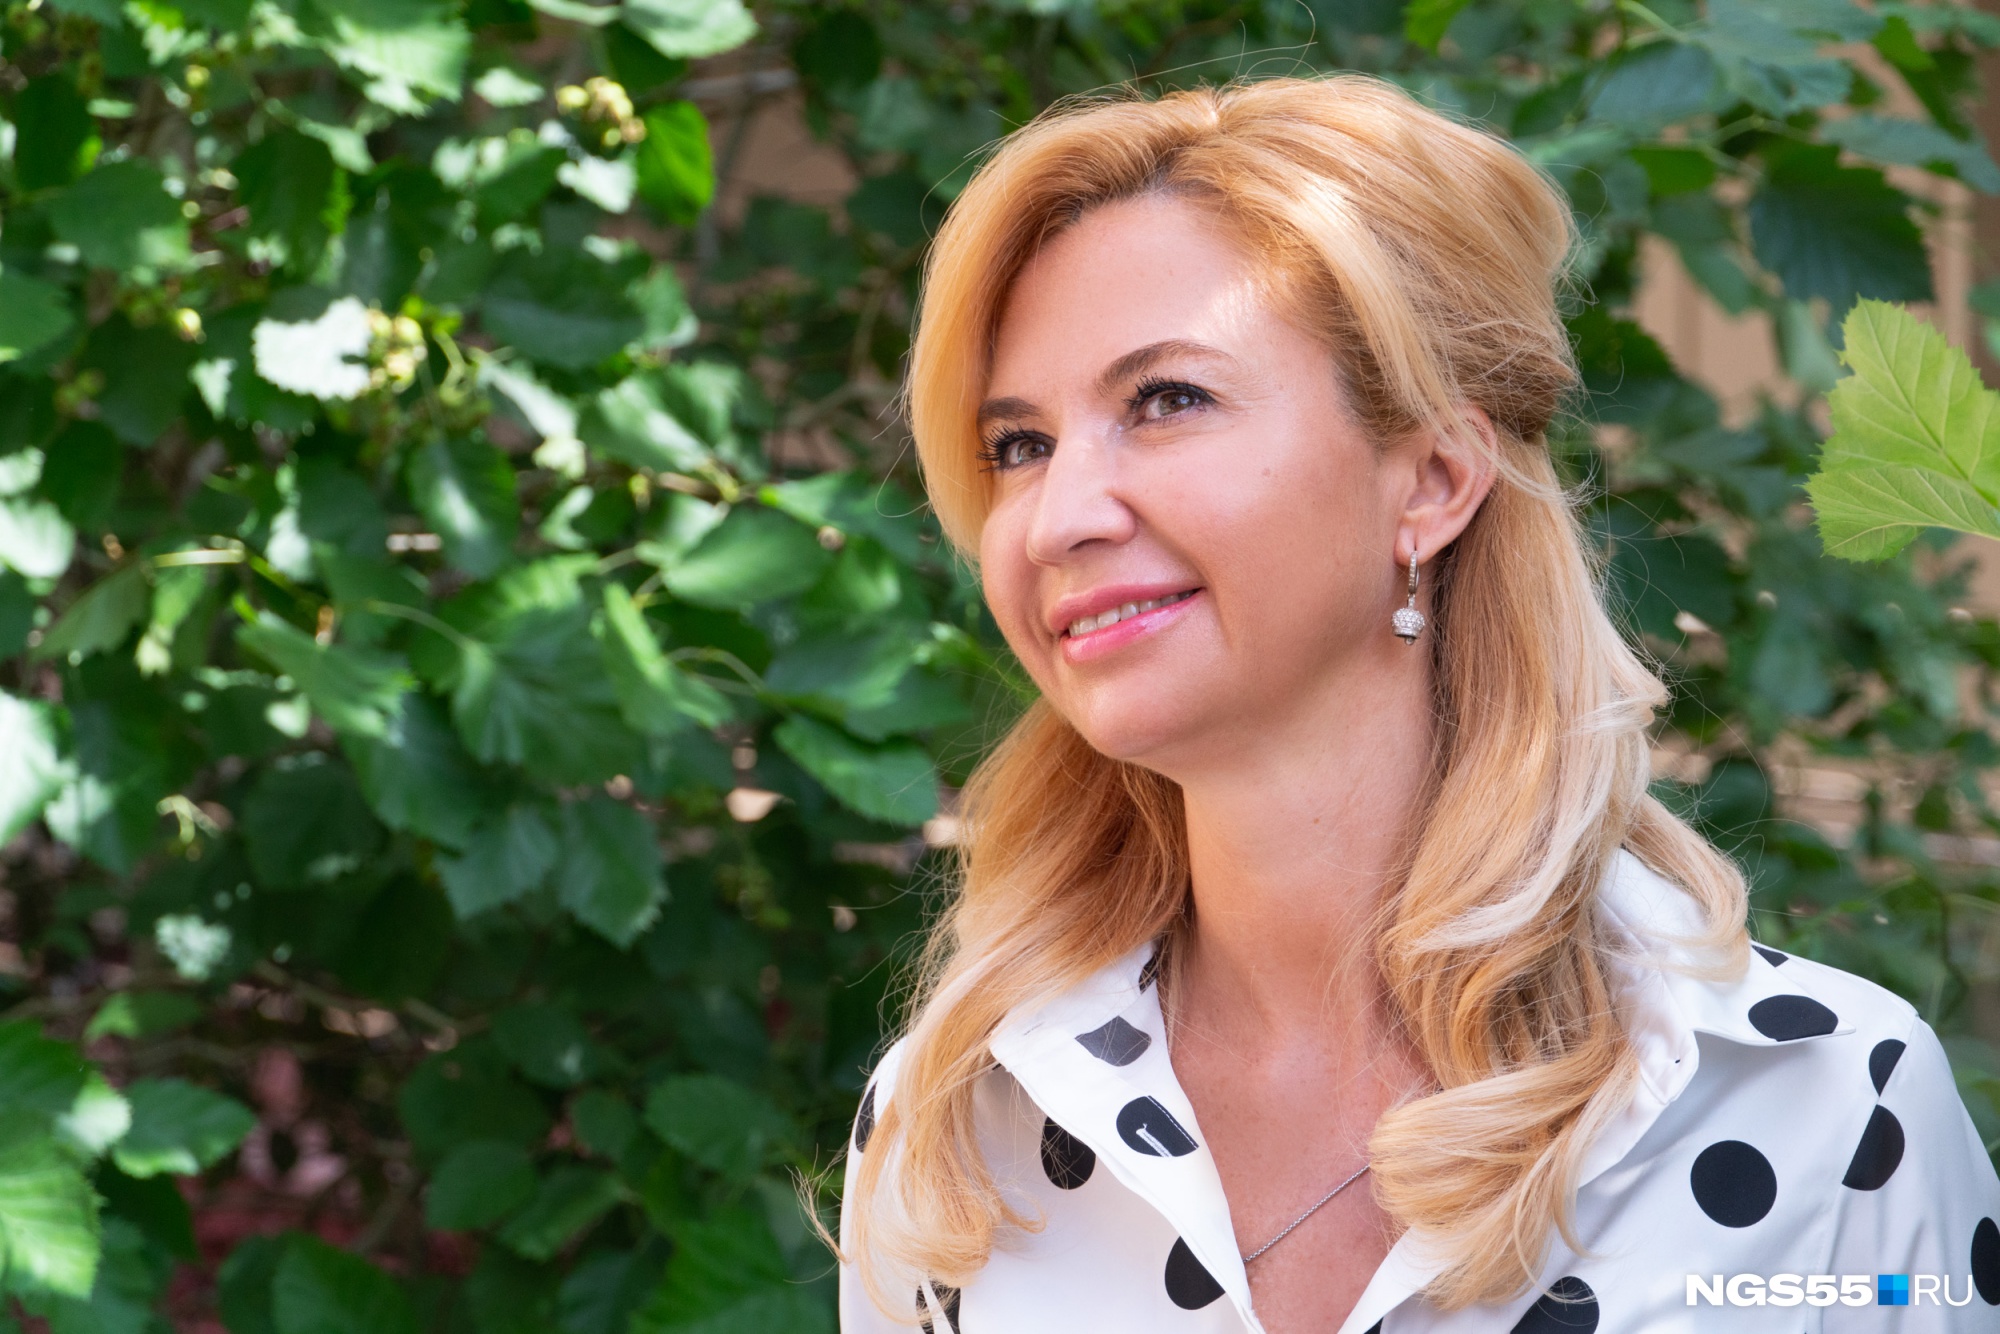 Ирина Солдатова хочет участвовать в судебном деле о поставках медоборудования. Минздрав против